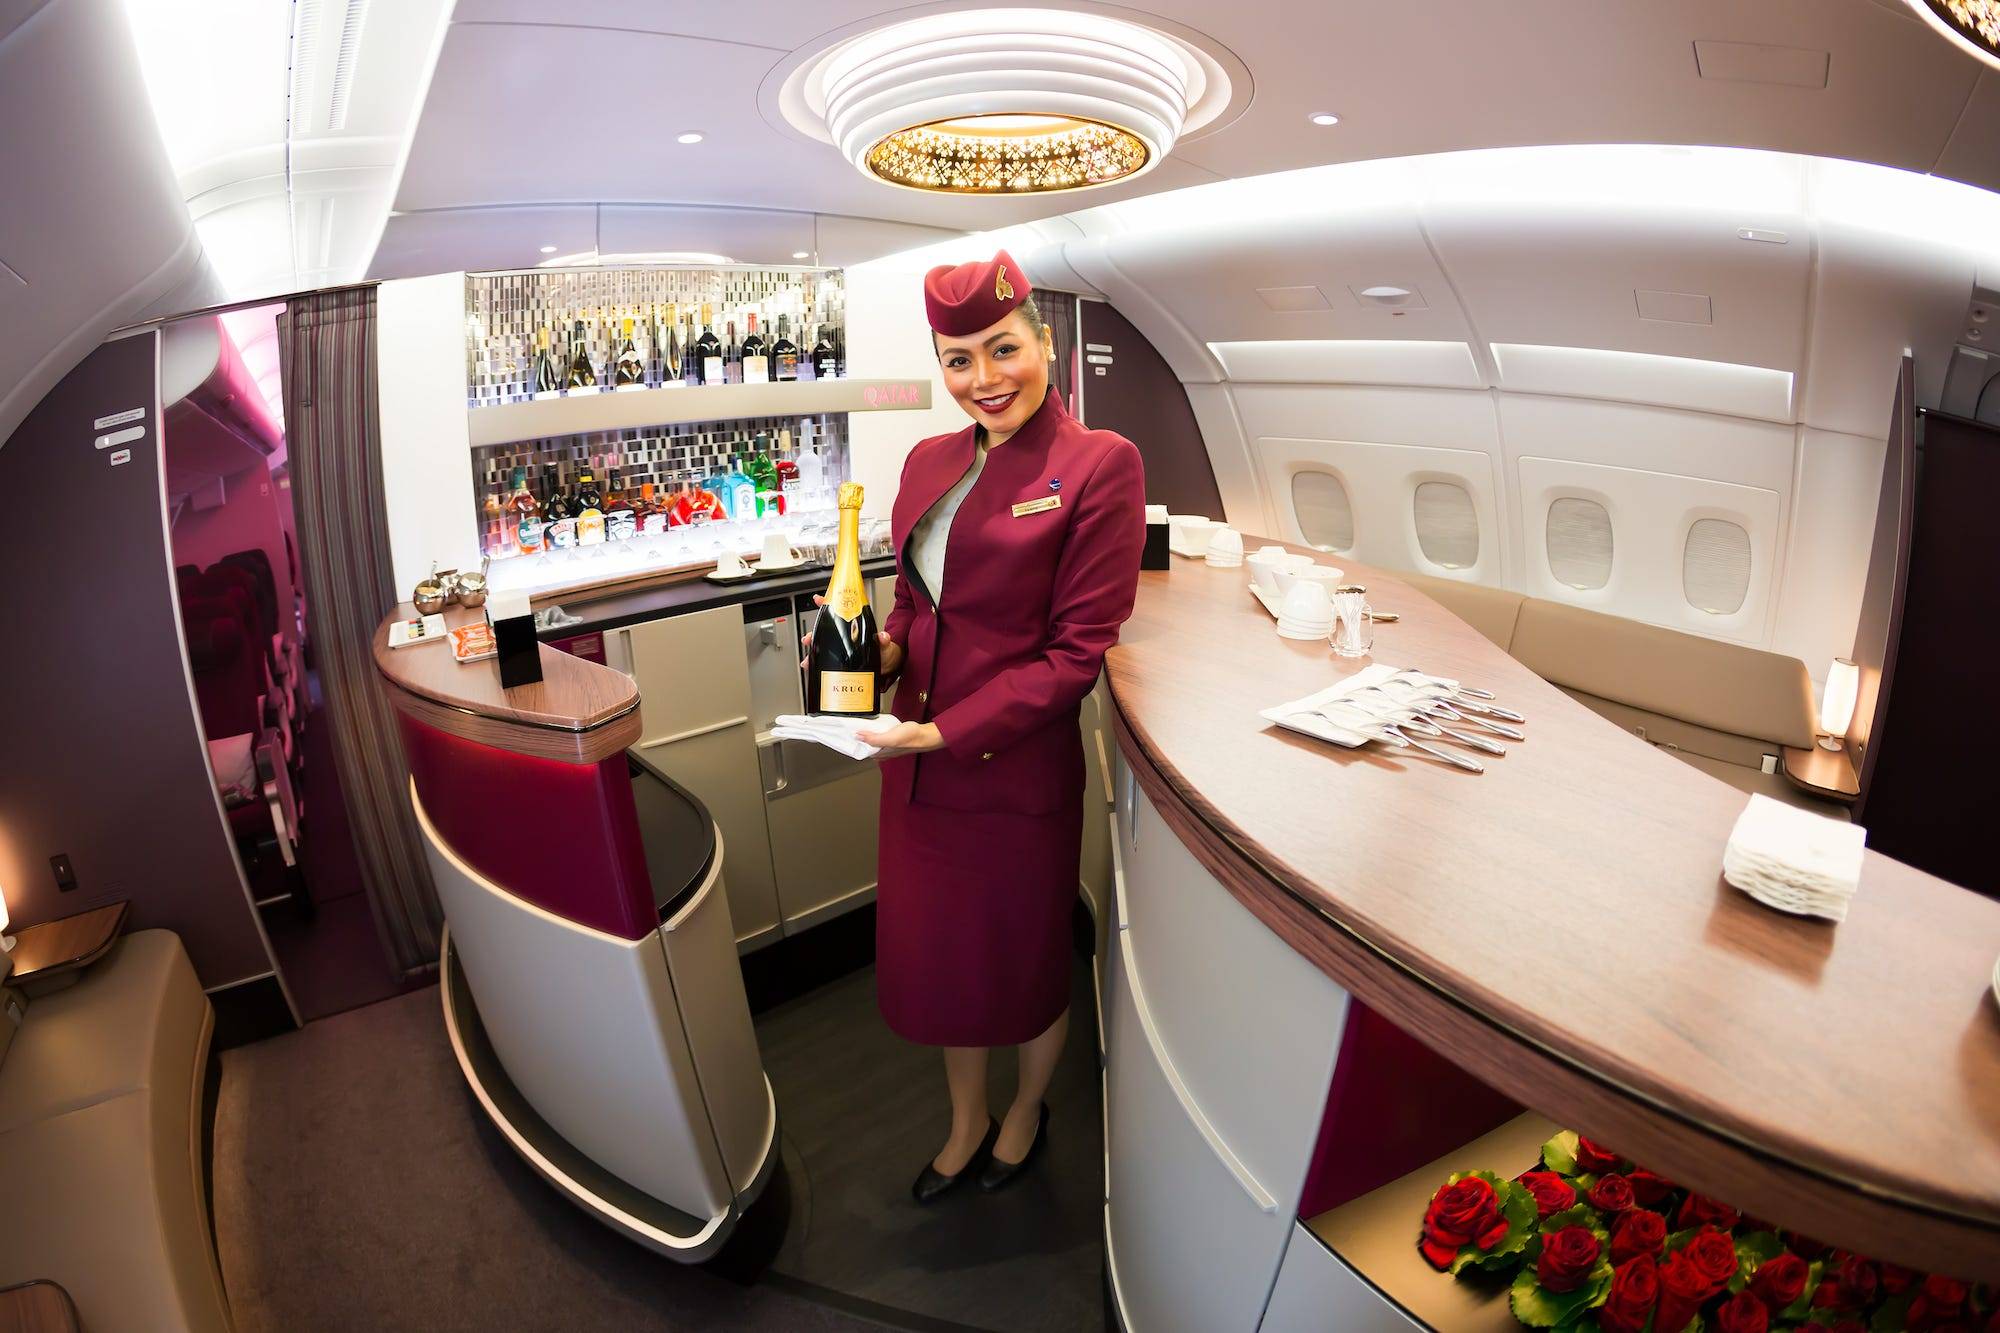 Qatar airways - отзывы пассажиров 2017-2018 про авиакомпанию катарские авиалинии